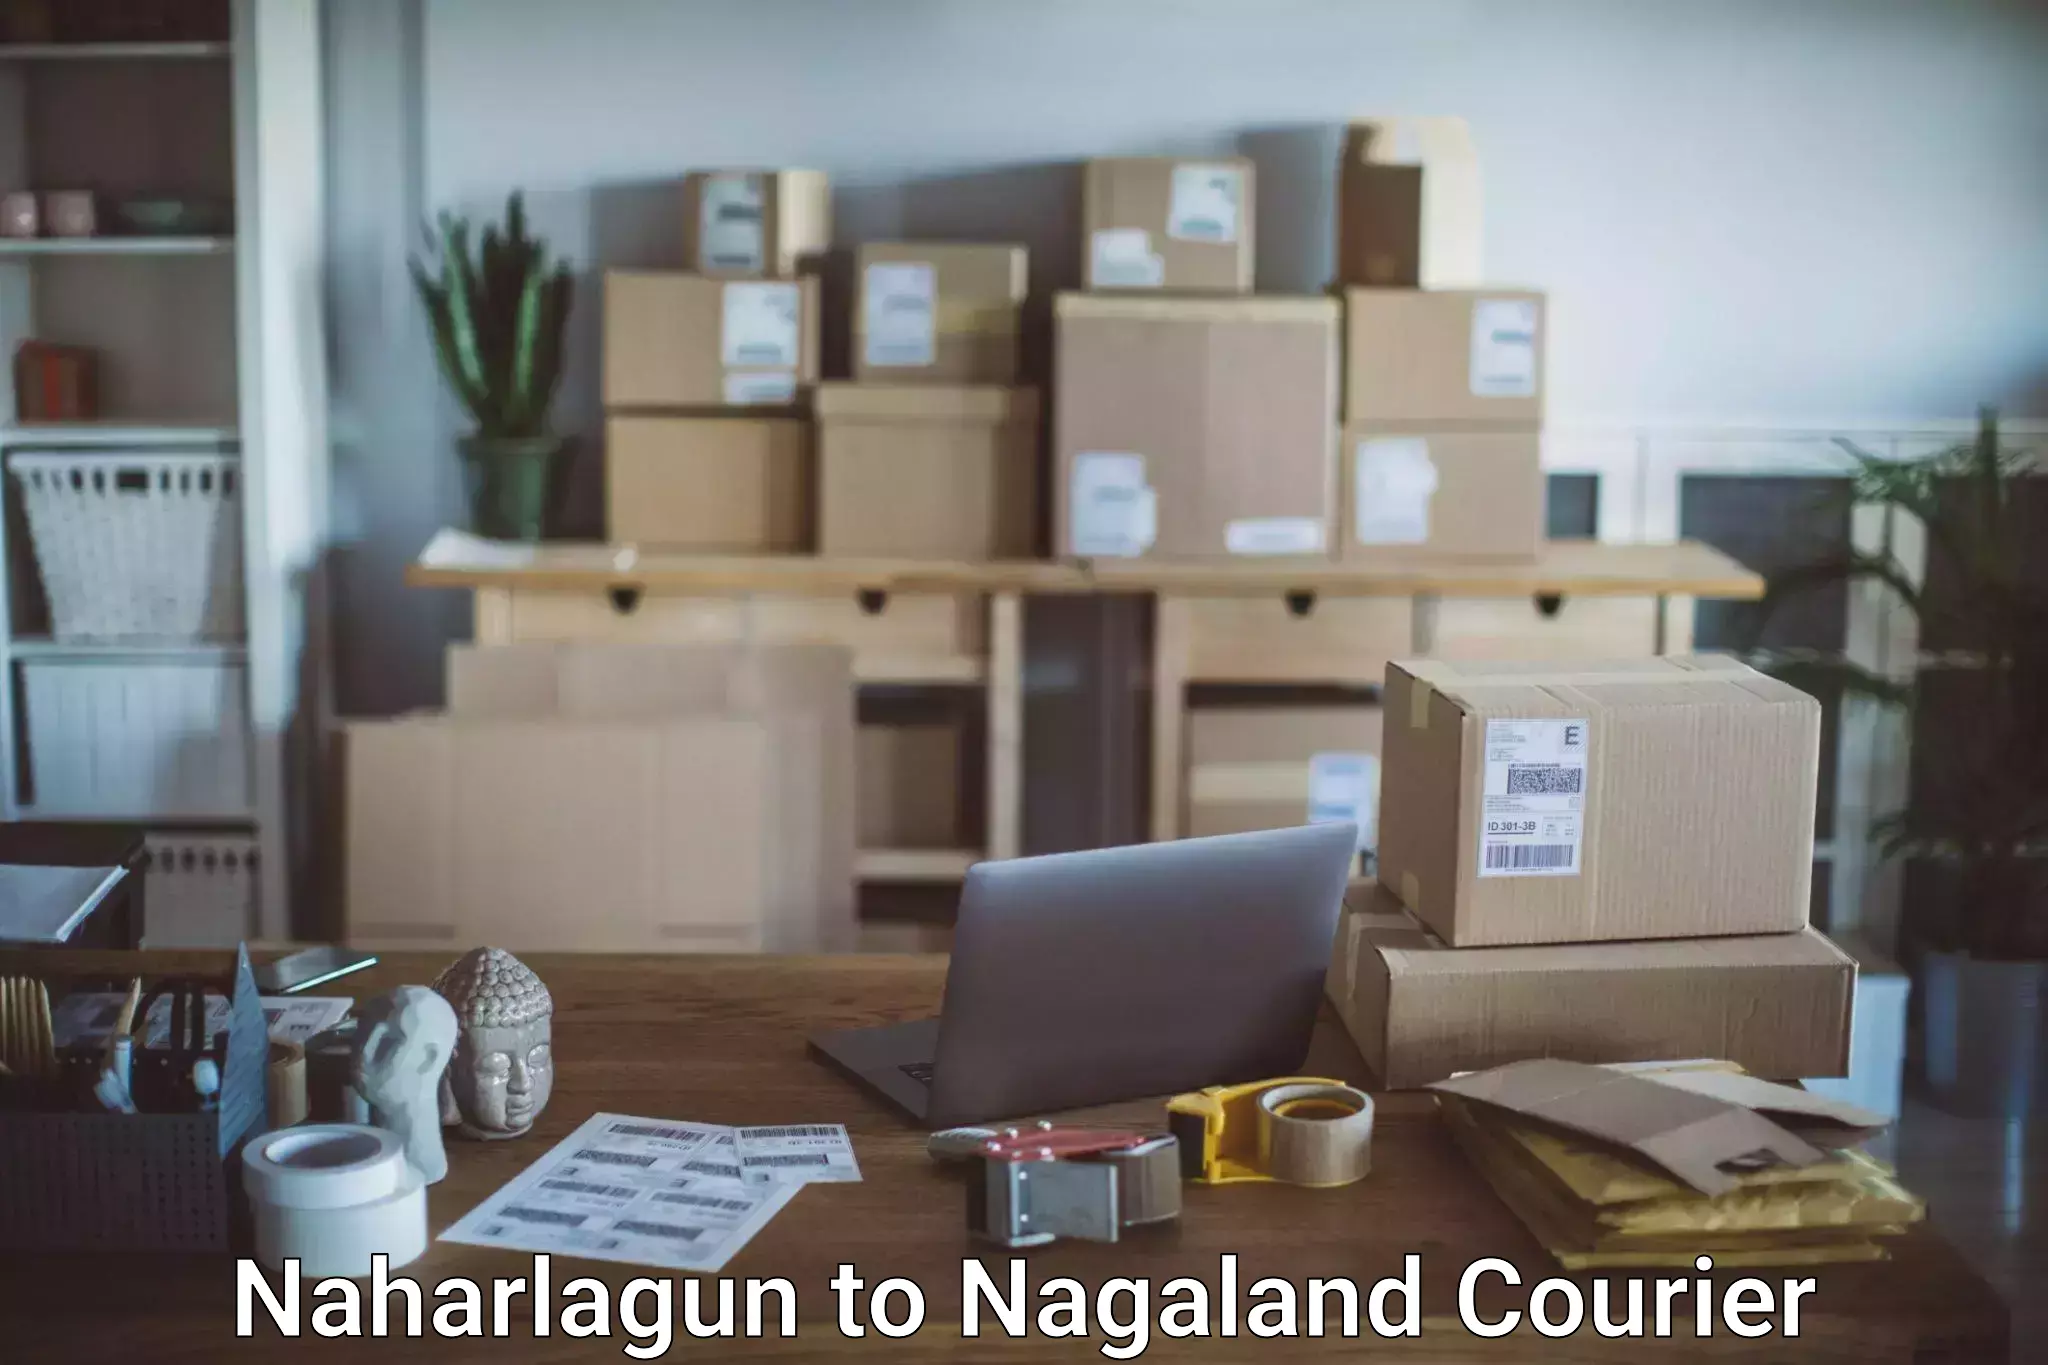 Baggage transport network Naharlagun to Longleng